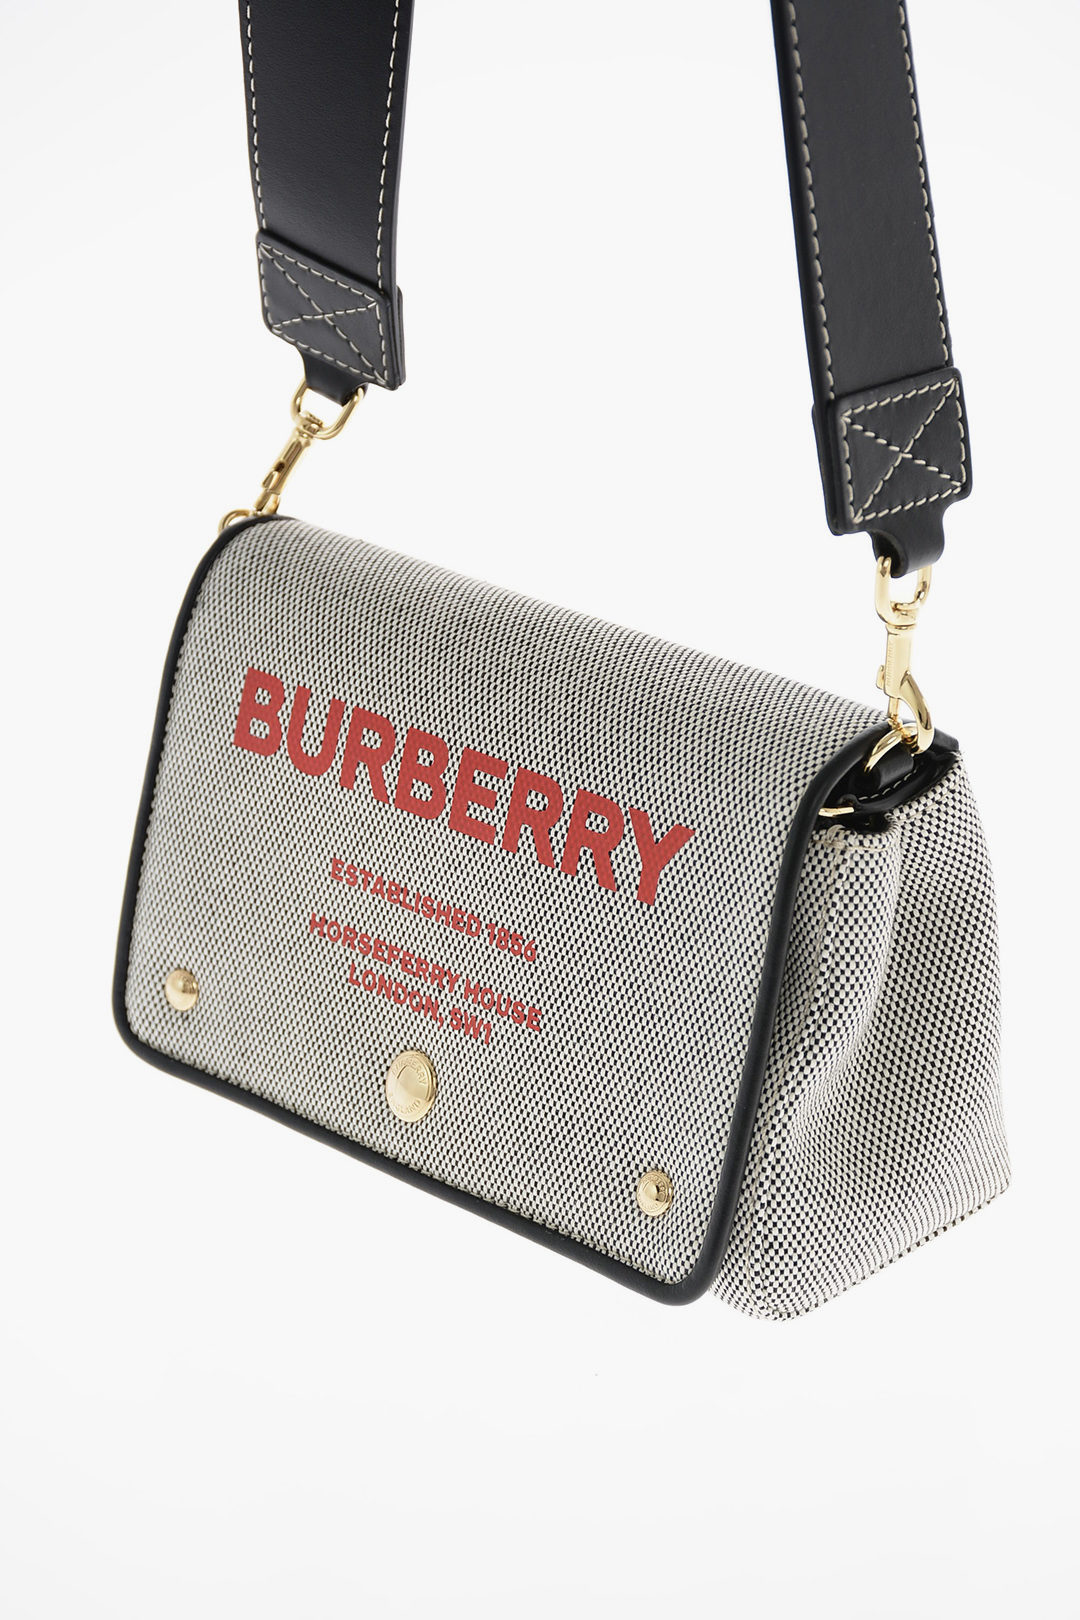 Burberry London Mini Tote Bag – Cettire